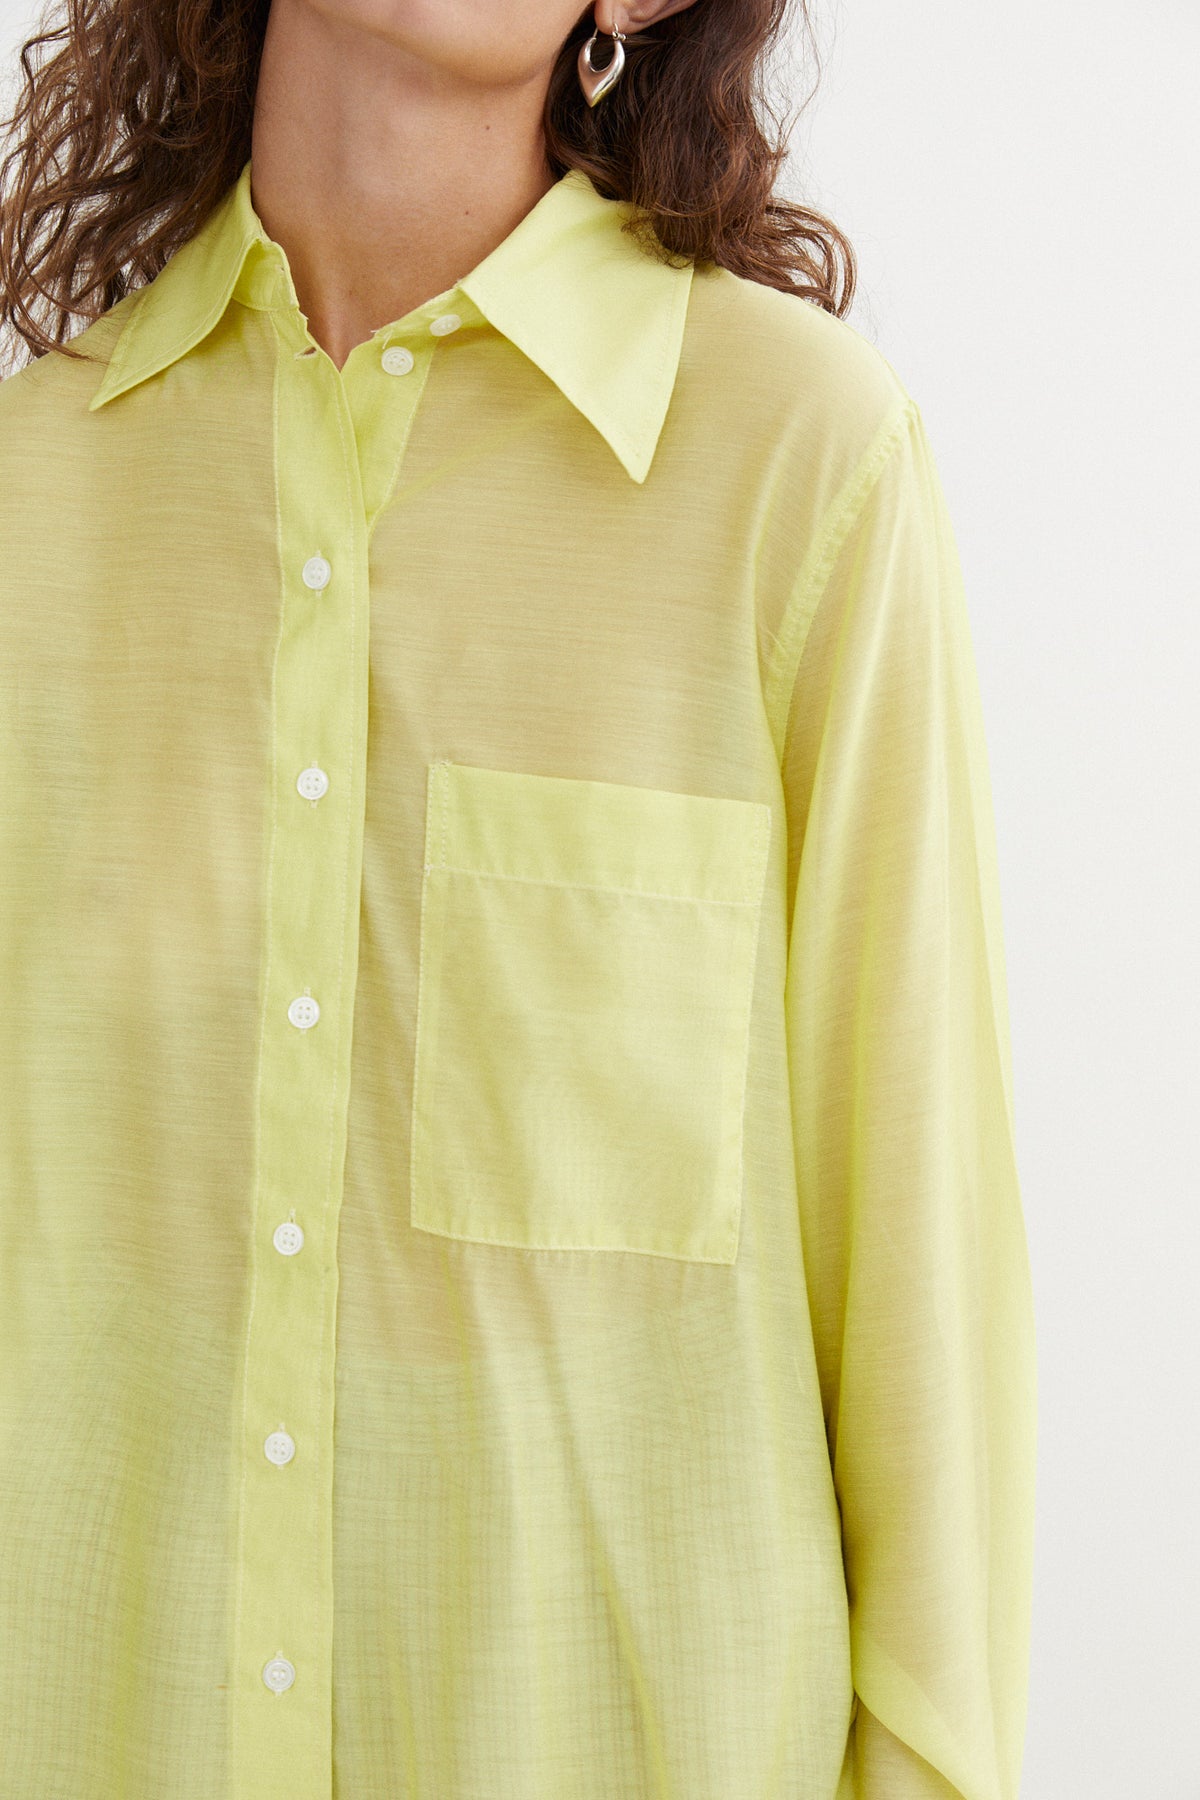 Blanca Leonie Shirt // Lemon